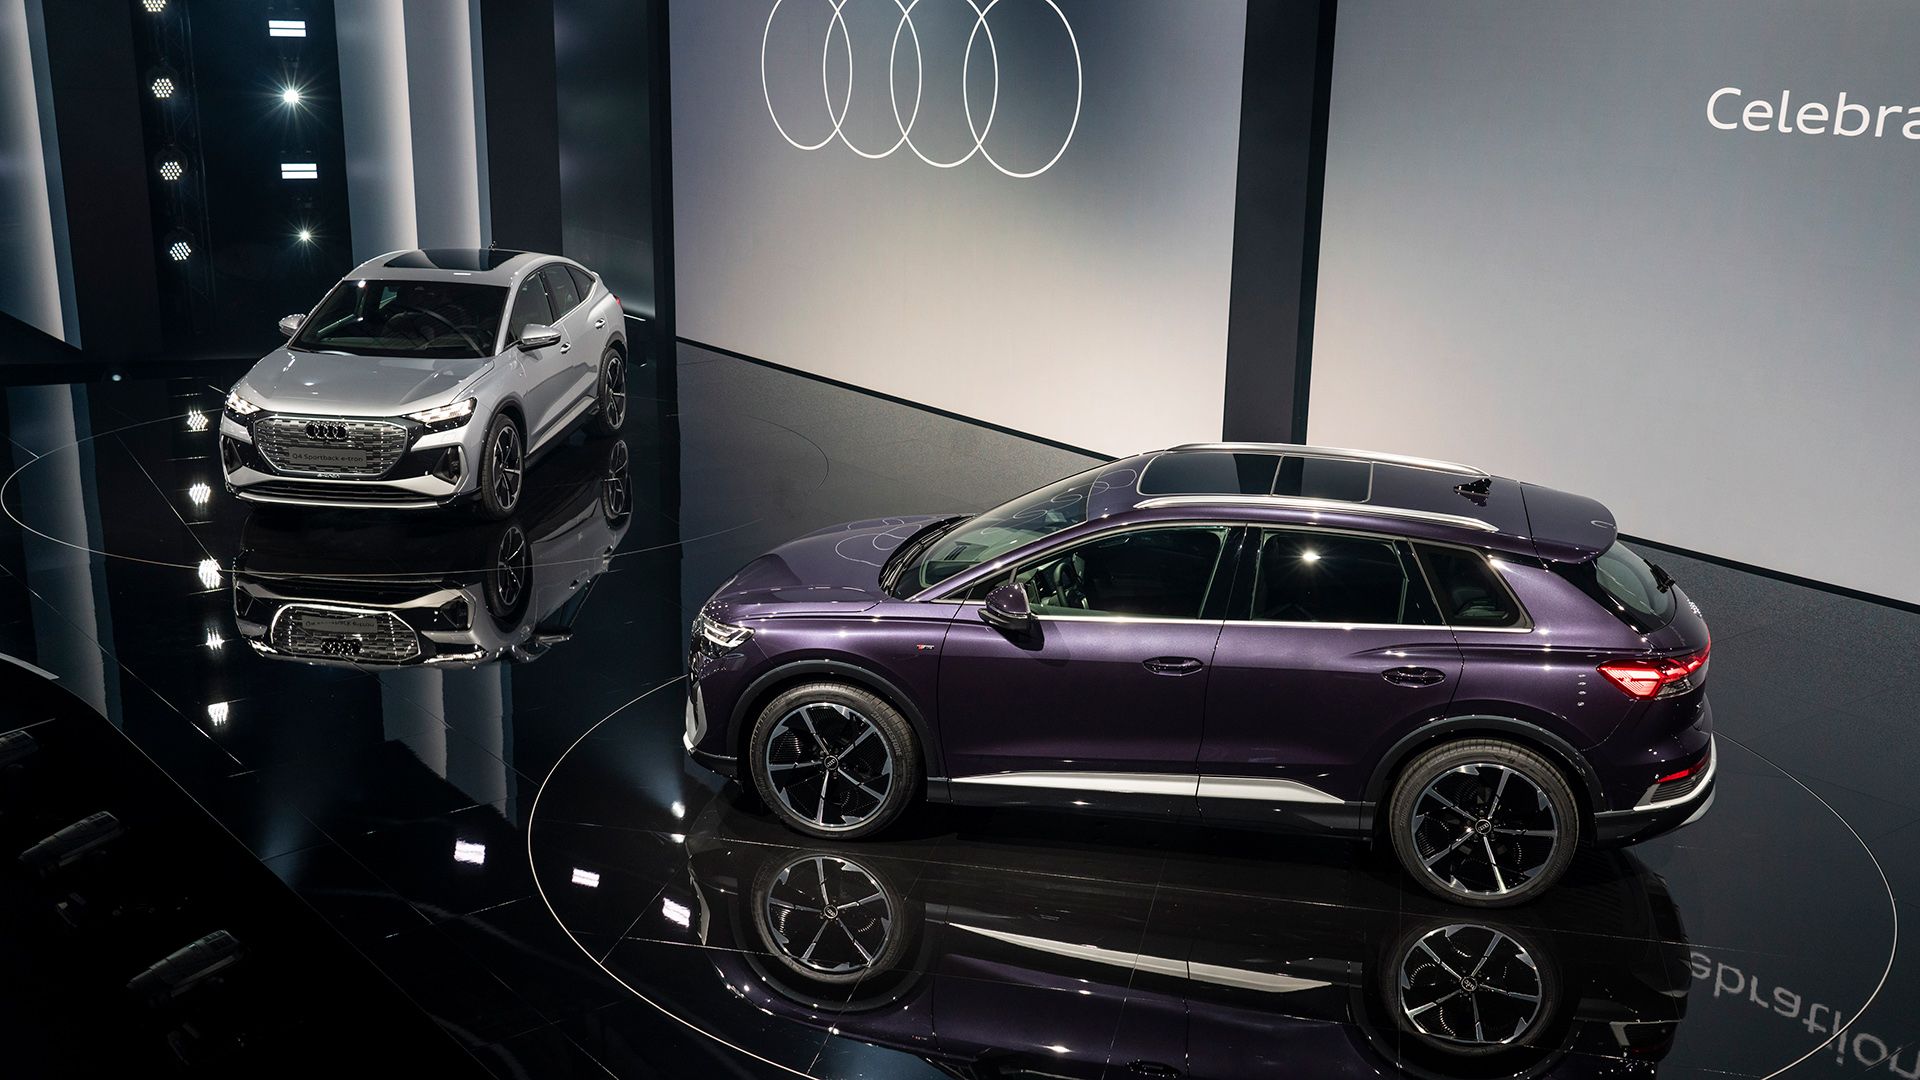 L’immagine mostra due modelli Audi Q4-tron, uno argento e l’altro viola, in palcoscenico.